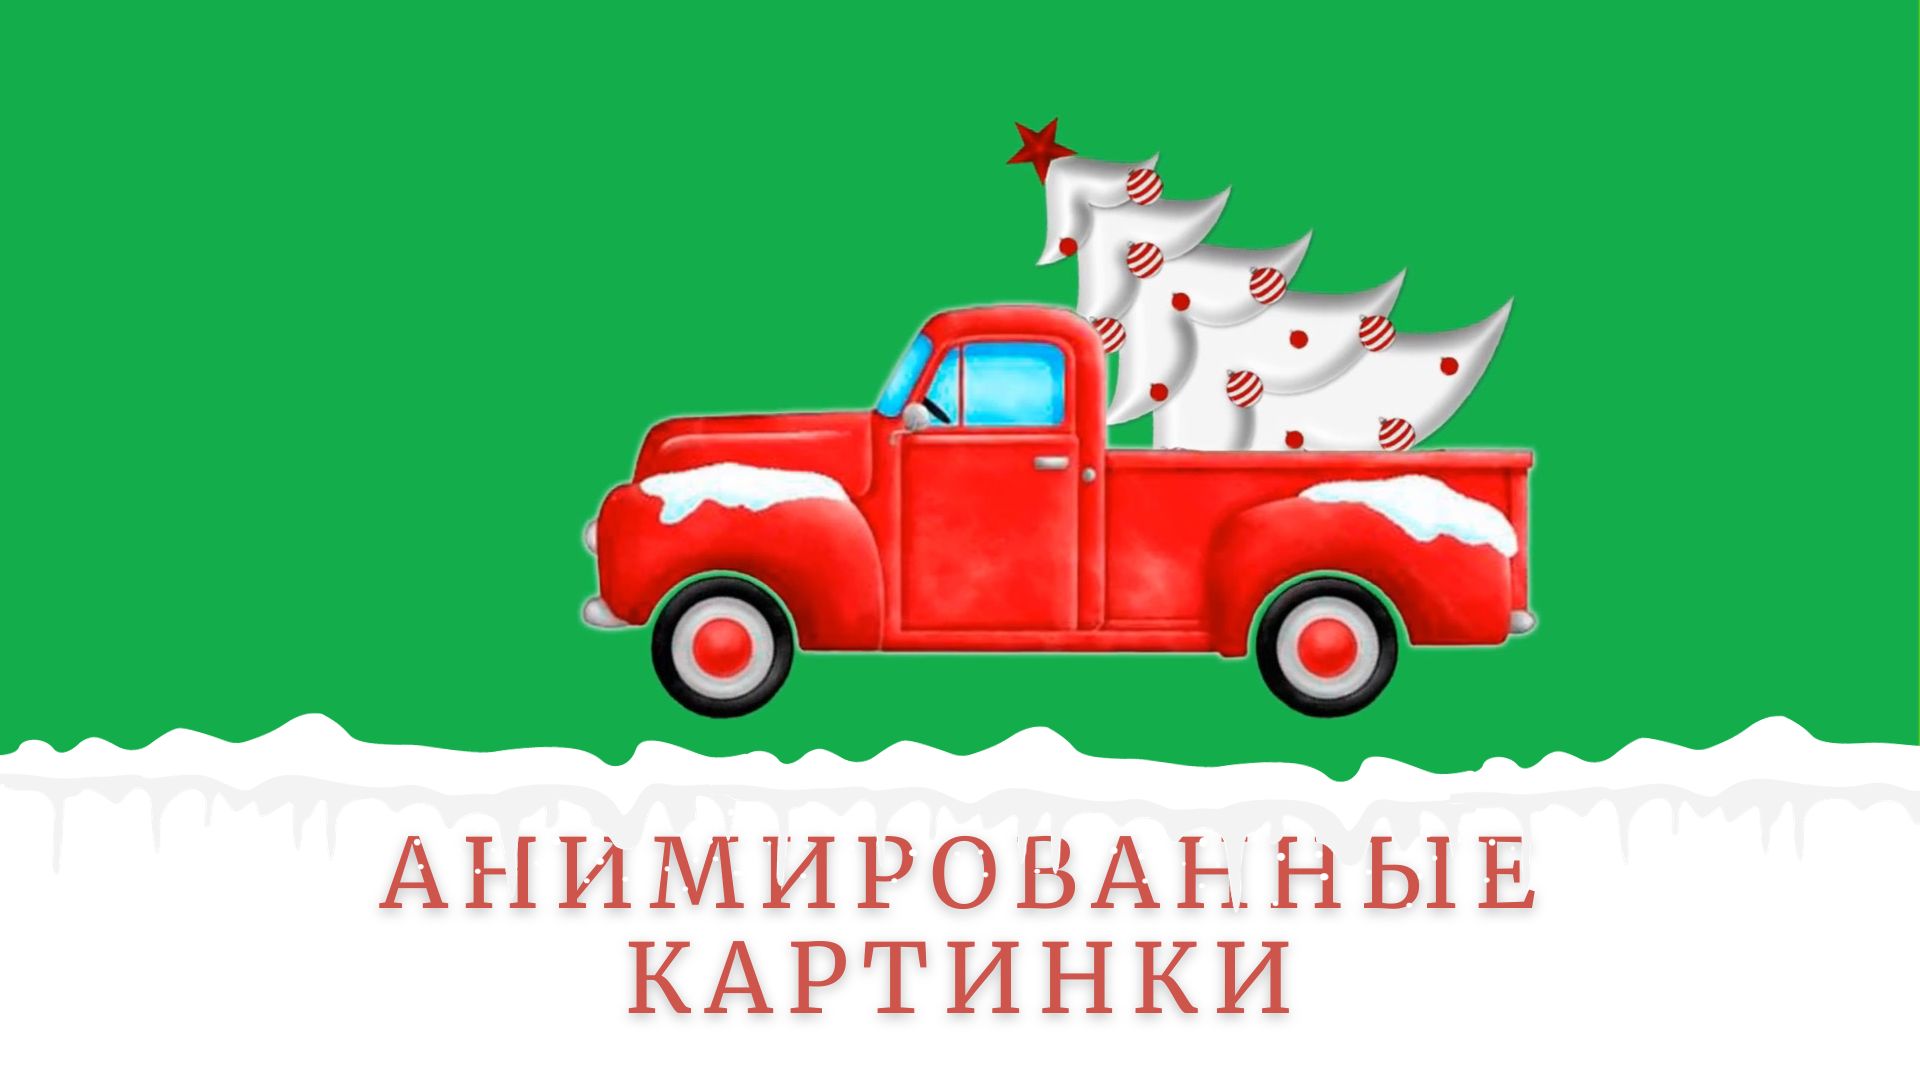 Новогодний грузовик | Анимированные картинки | Футажи на зеленом фоне